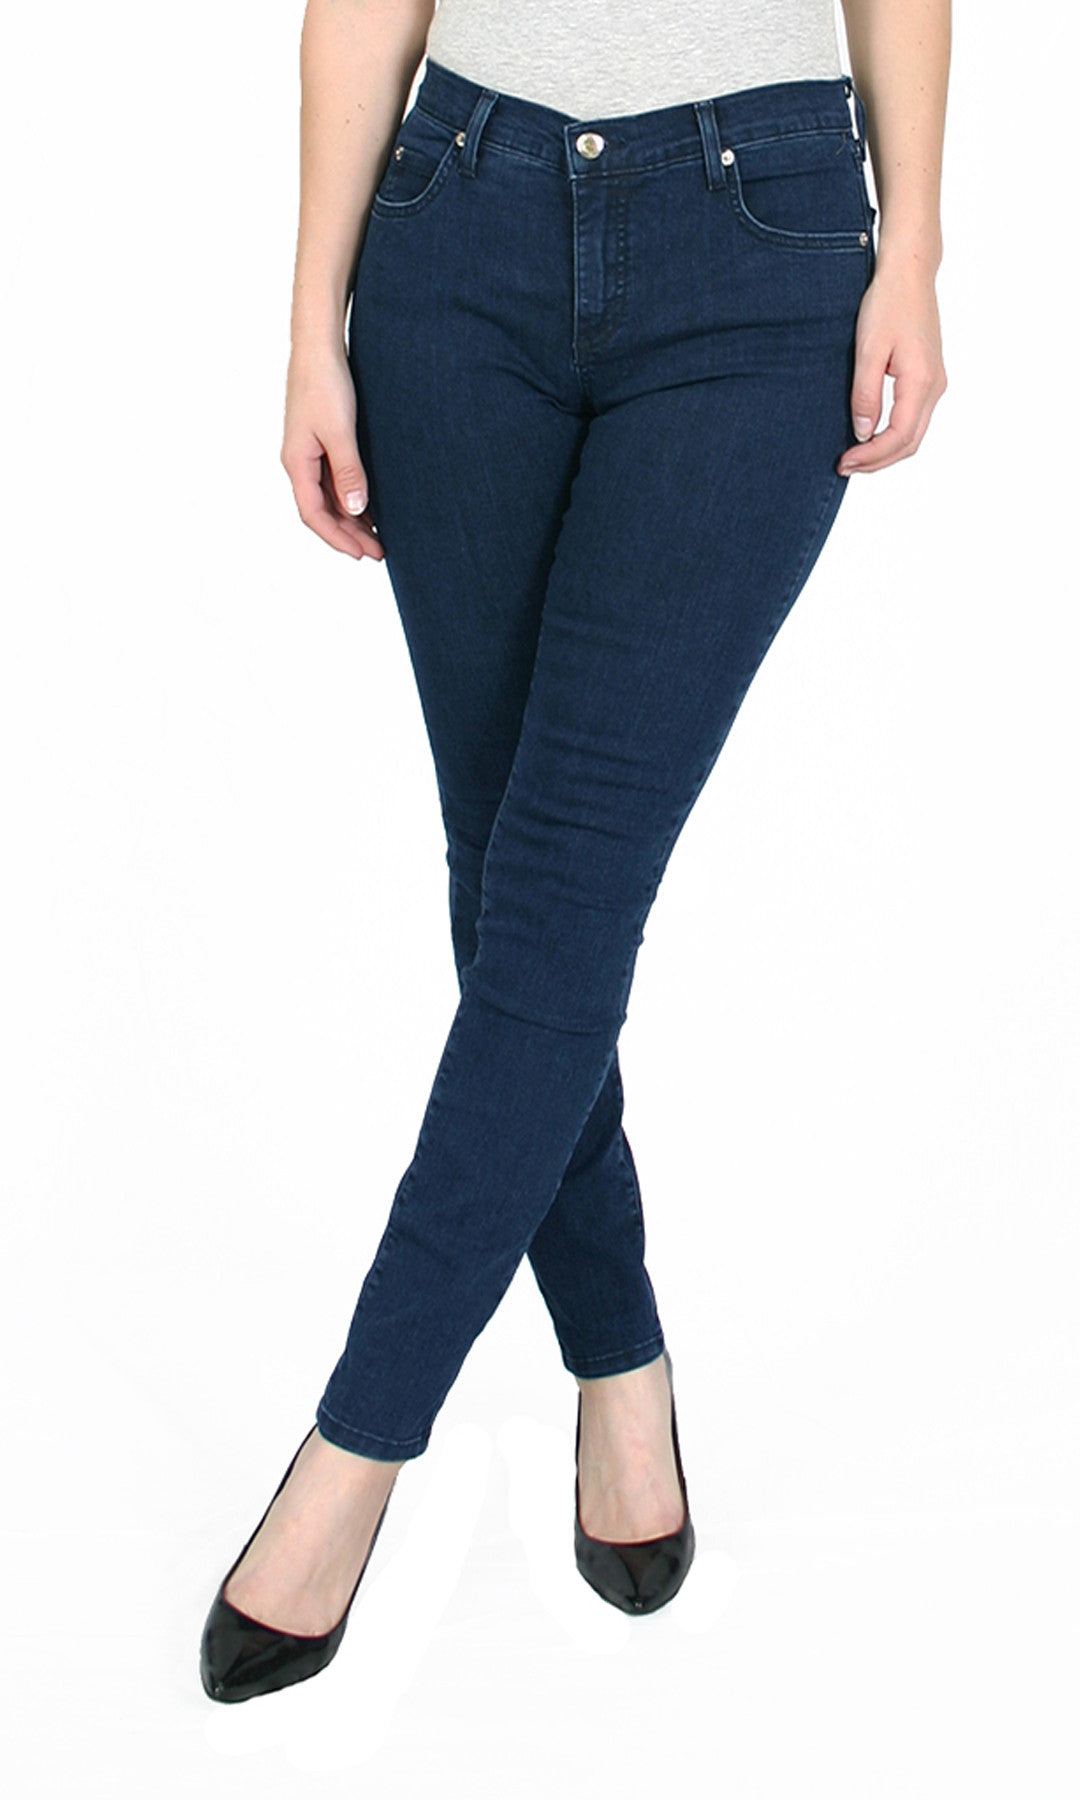 TrueSlim™ Premium Denim Jeggings – TrueSlim Jeans